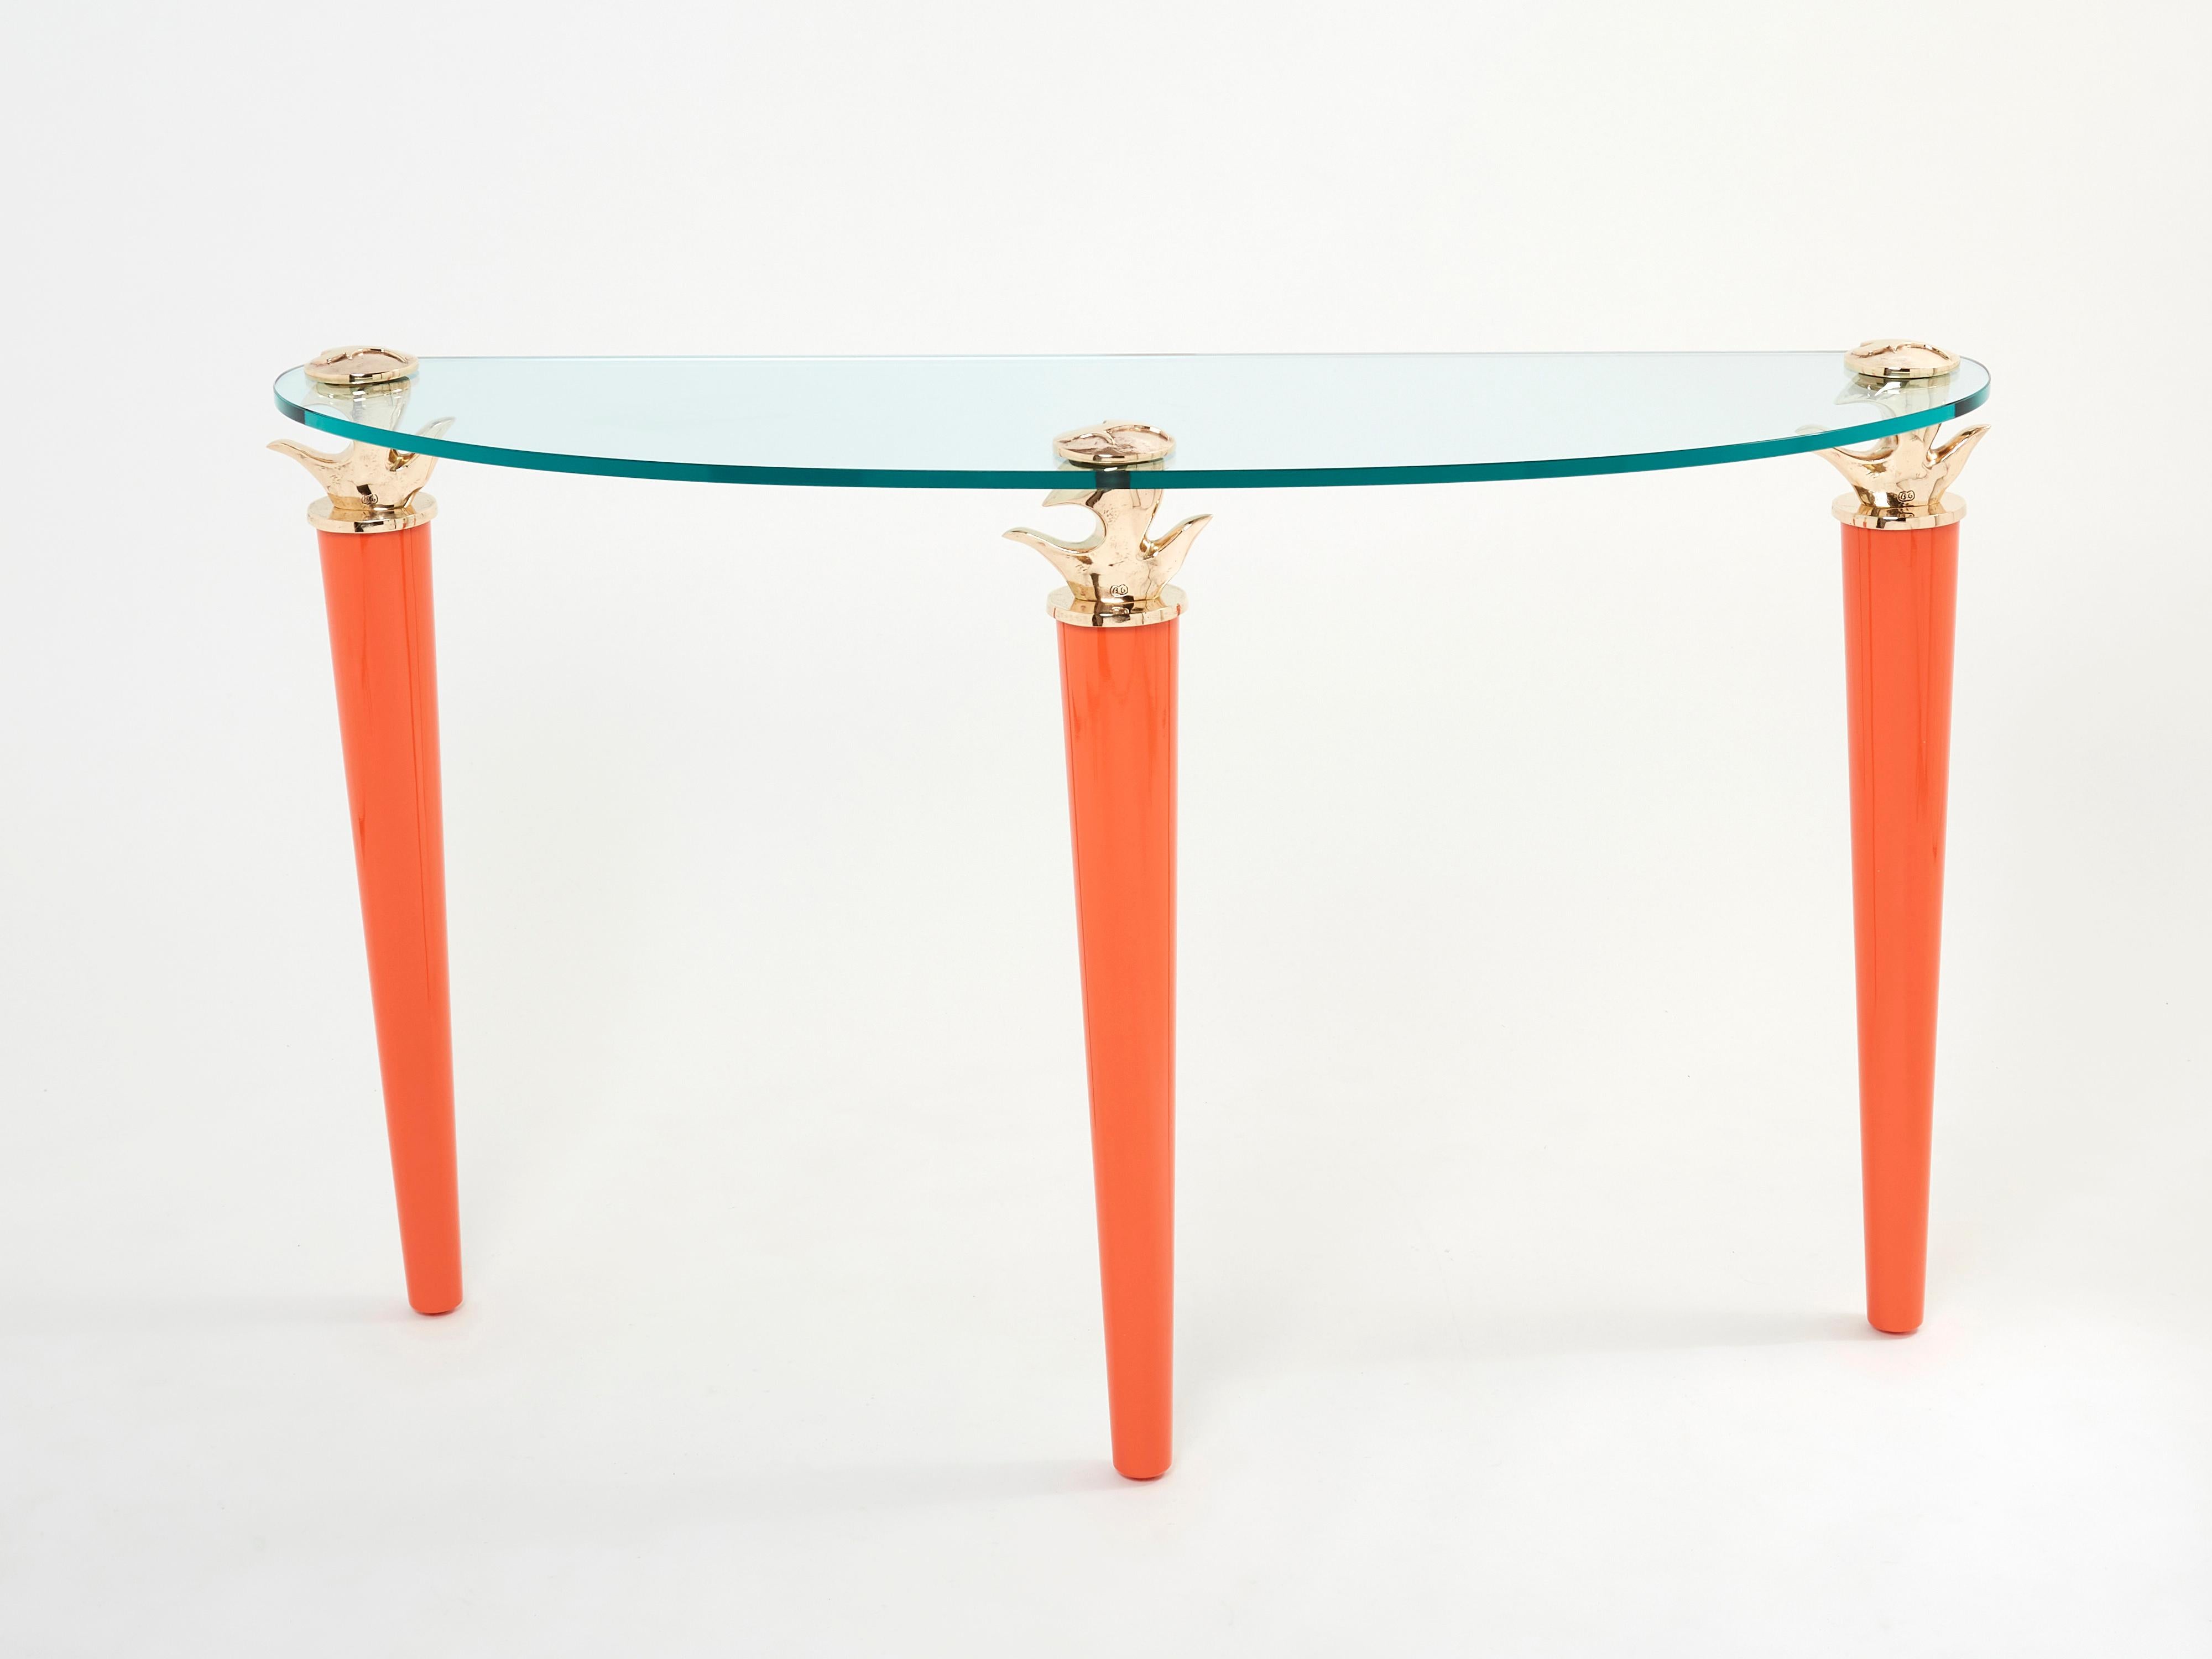 Rare table console signée par Elizabeth Garouste & Mattia Bonetti, modèle Concerto, conçue et réalisée en 1995 par le duo emblématique. Les trois grands pieds sont réalisés dans un beau bois laqué orange surmonté d'éléments en bronze doré, tous